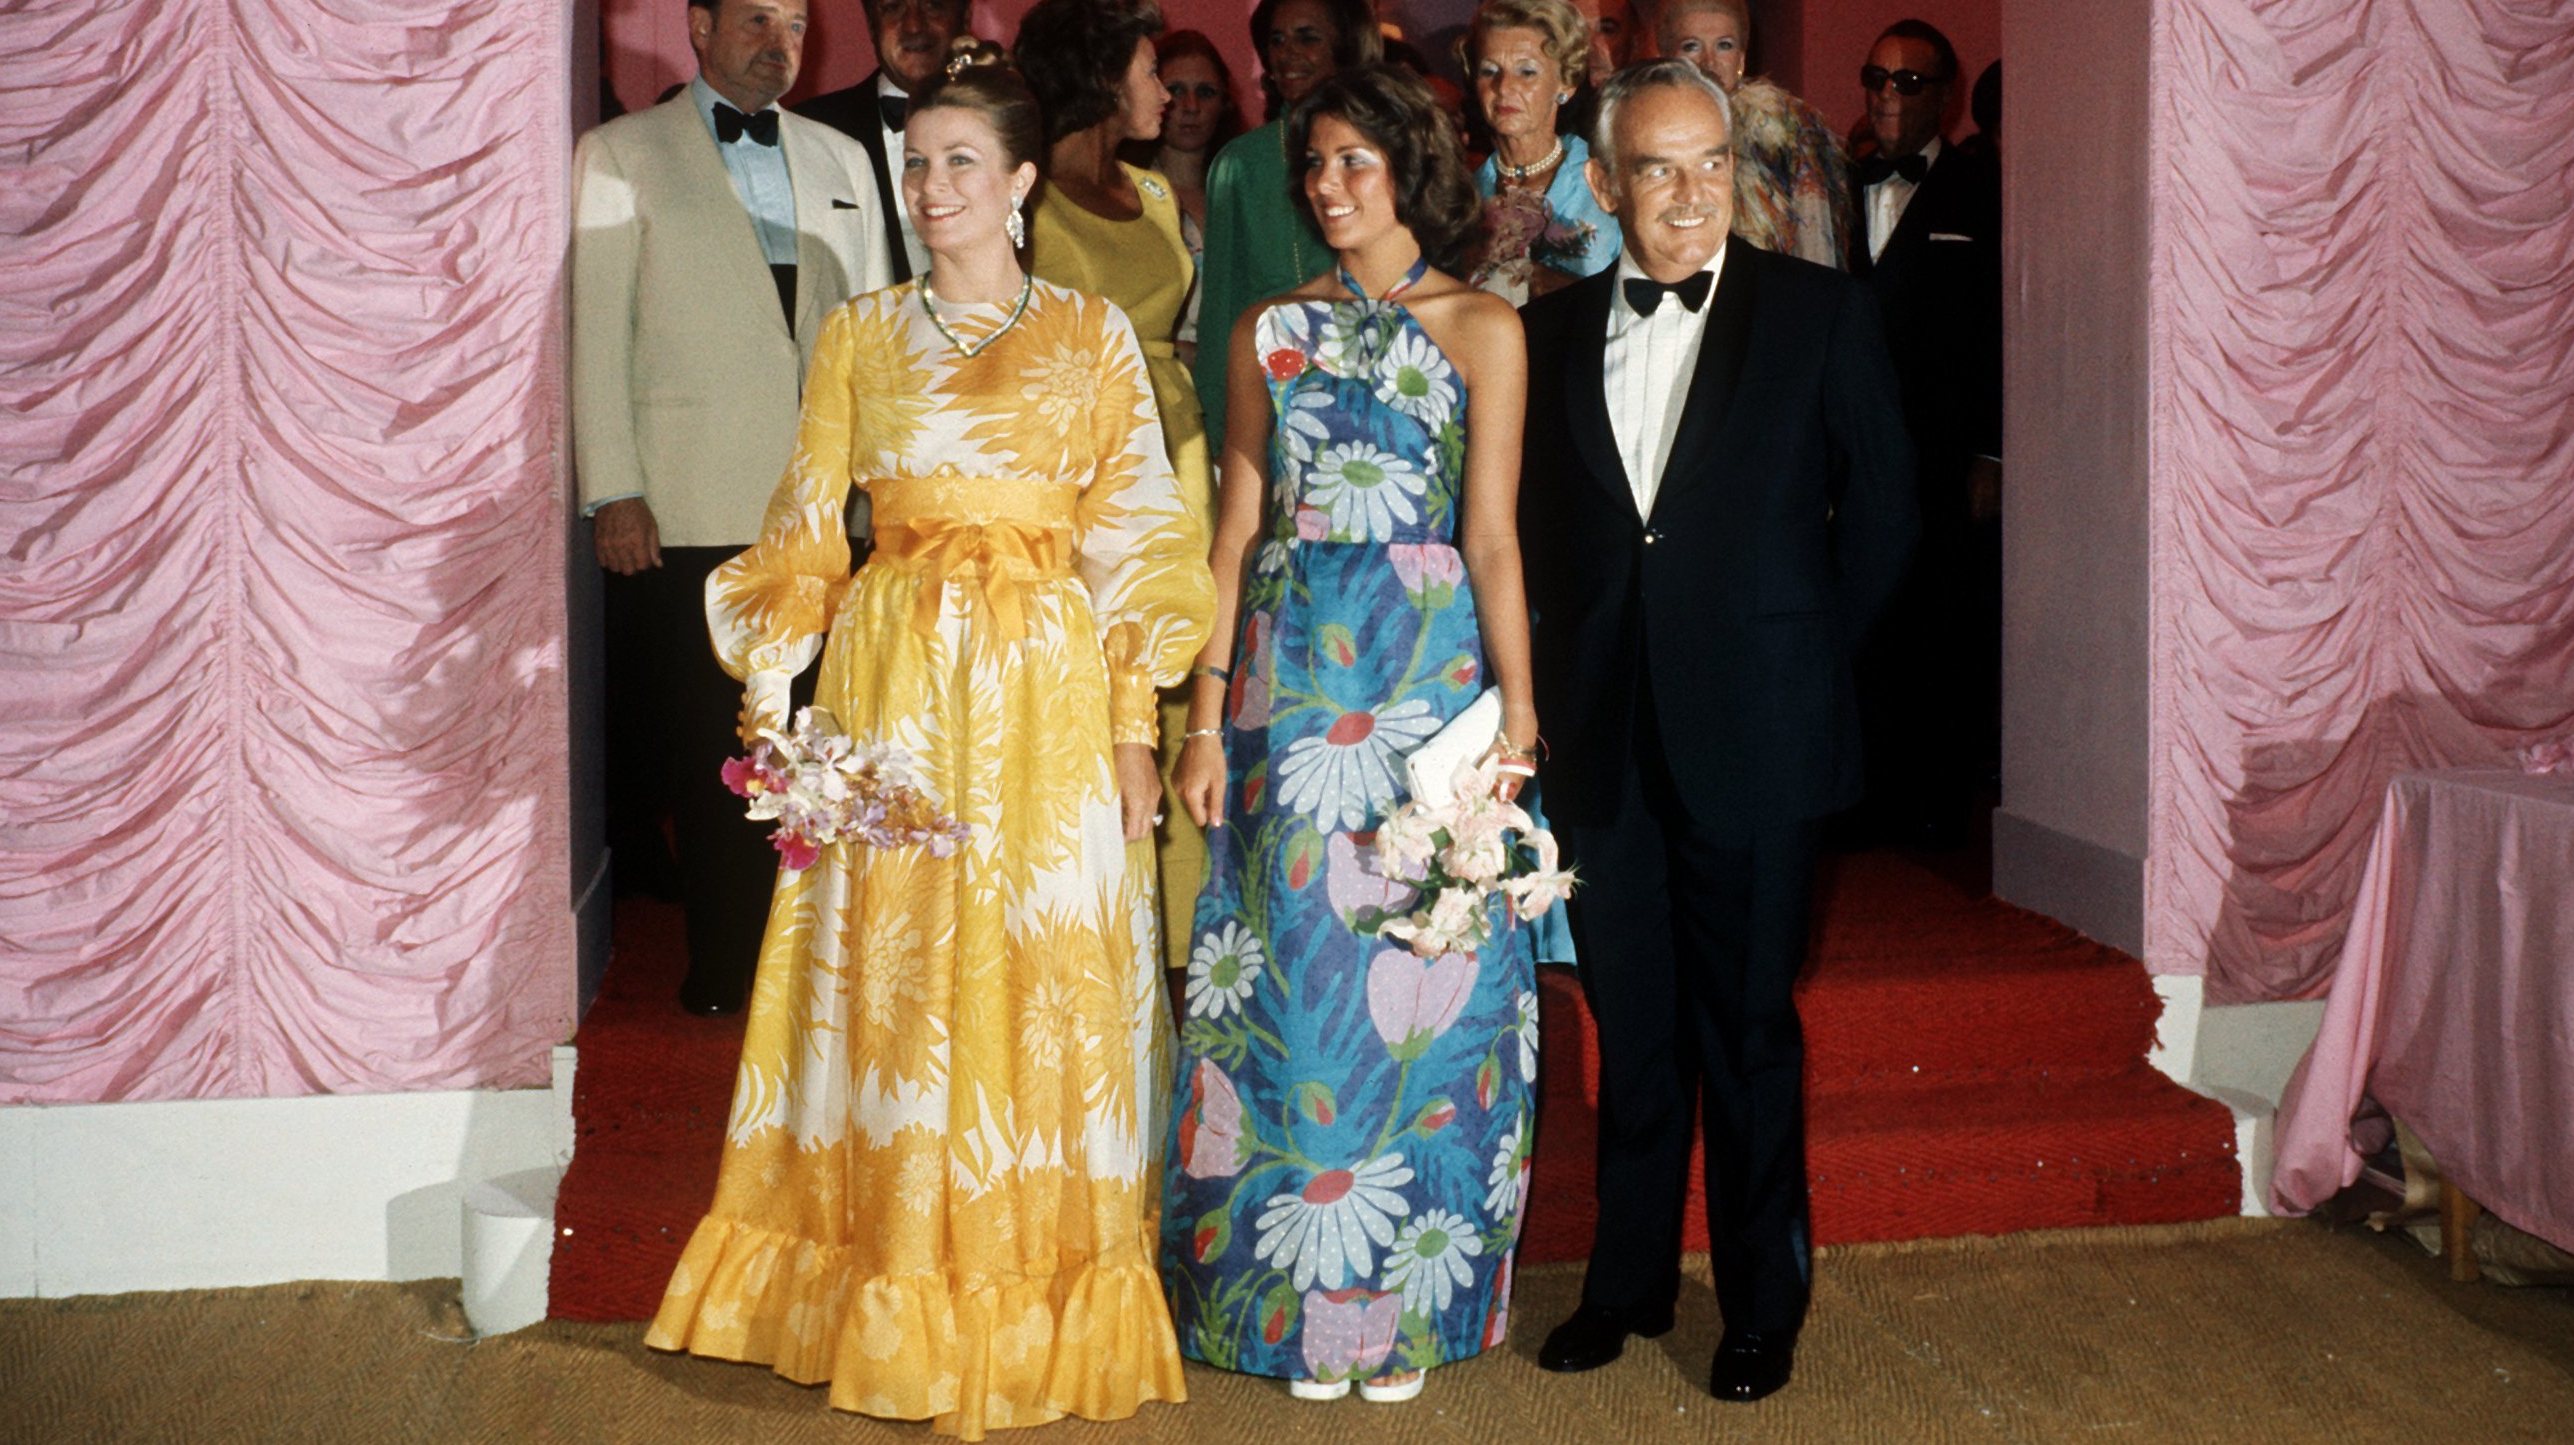 Fürstenfamilie von Monaco auf Rotkreuz-Ball